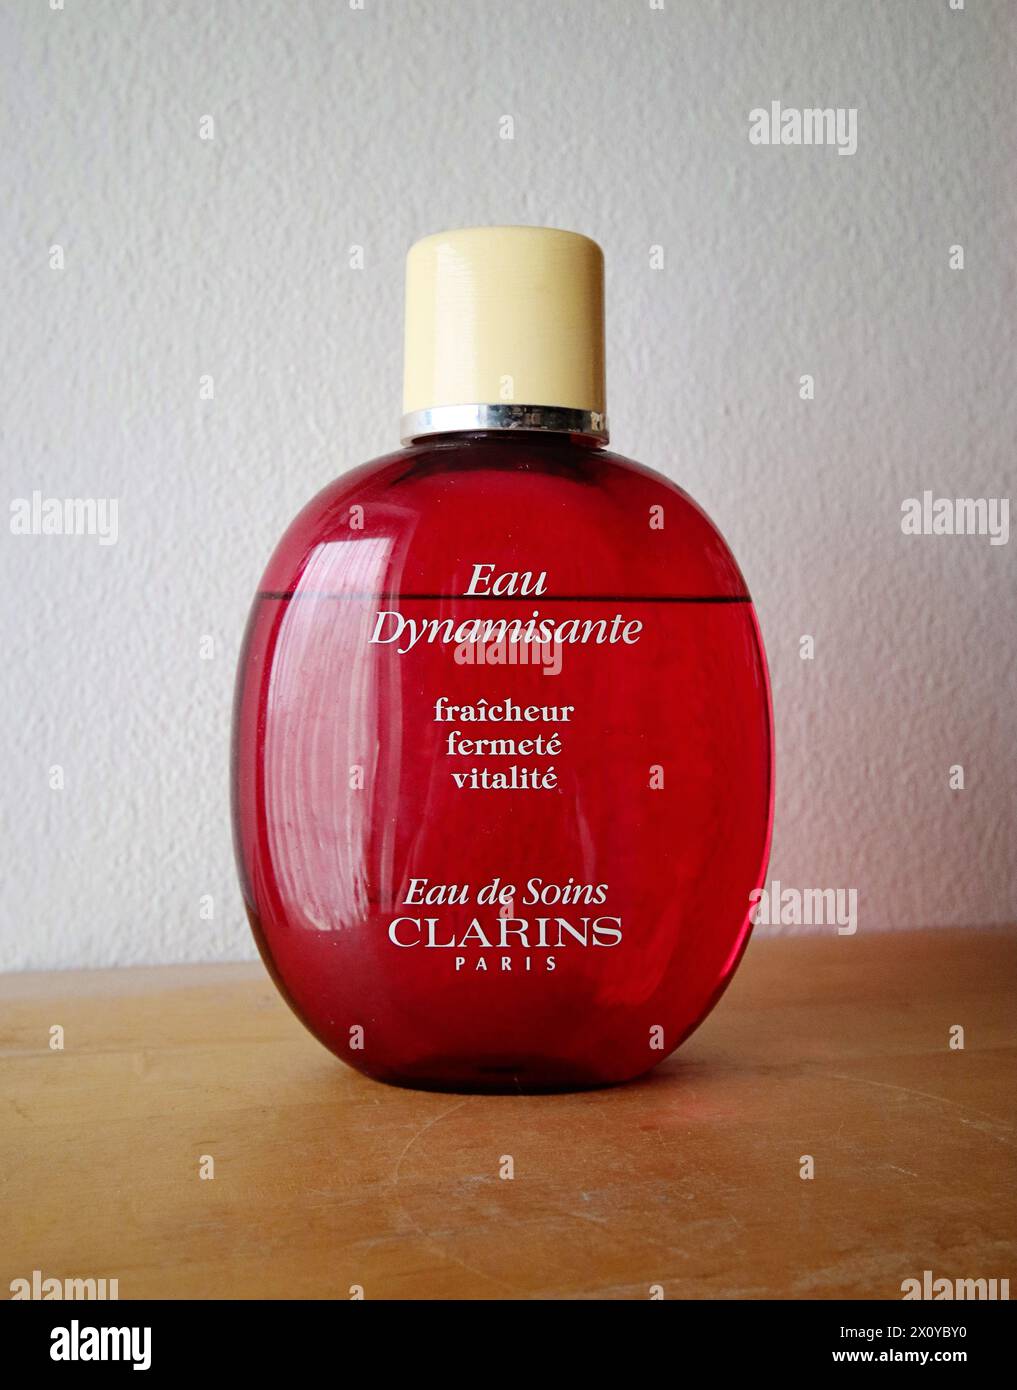 Eau dynamisante, parfum vintage de Clarins pour femme au parfum frais d'agrumes encore en production à partir de 1987 Banque D'Images